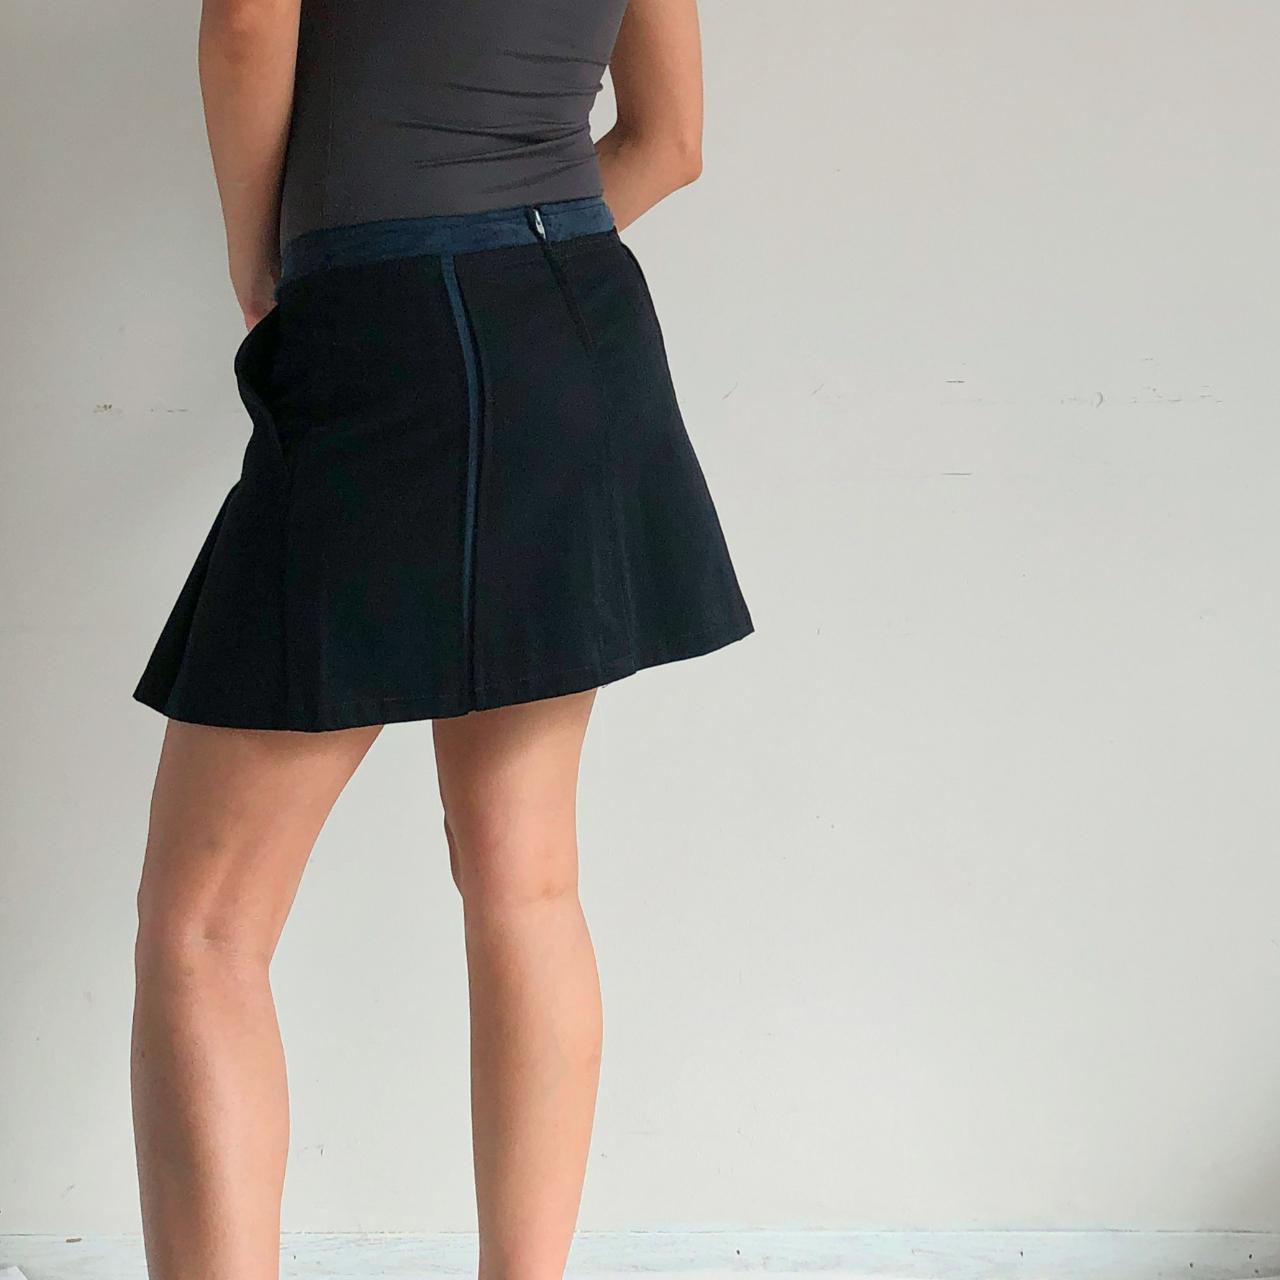 Product Image 3 - navy blue pleated mini skirt

Italian